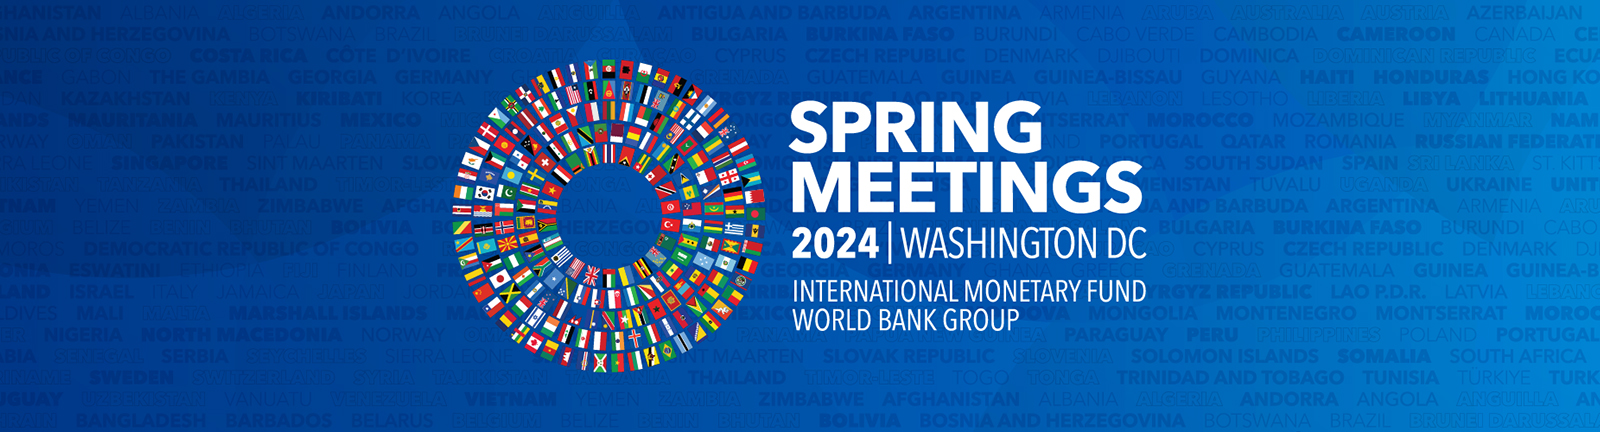 IMF Spring Meetings 